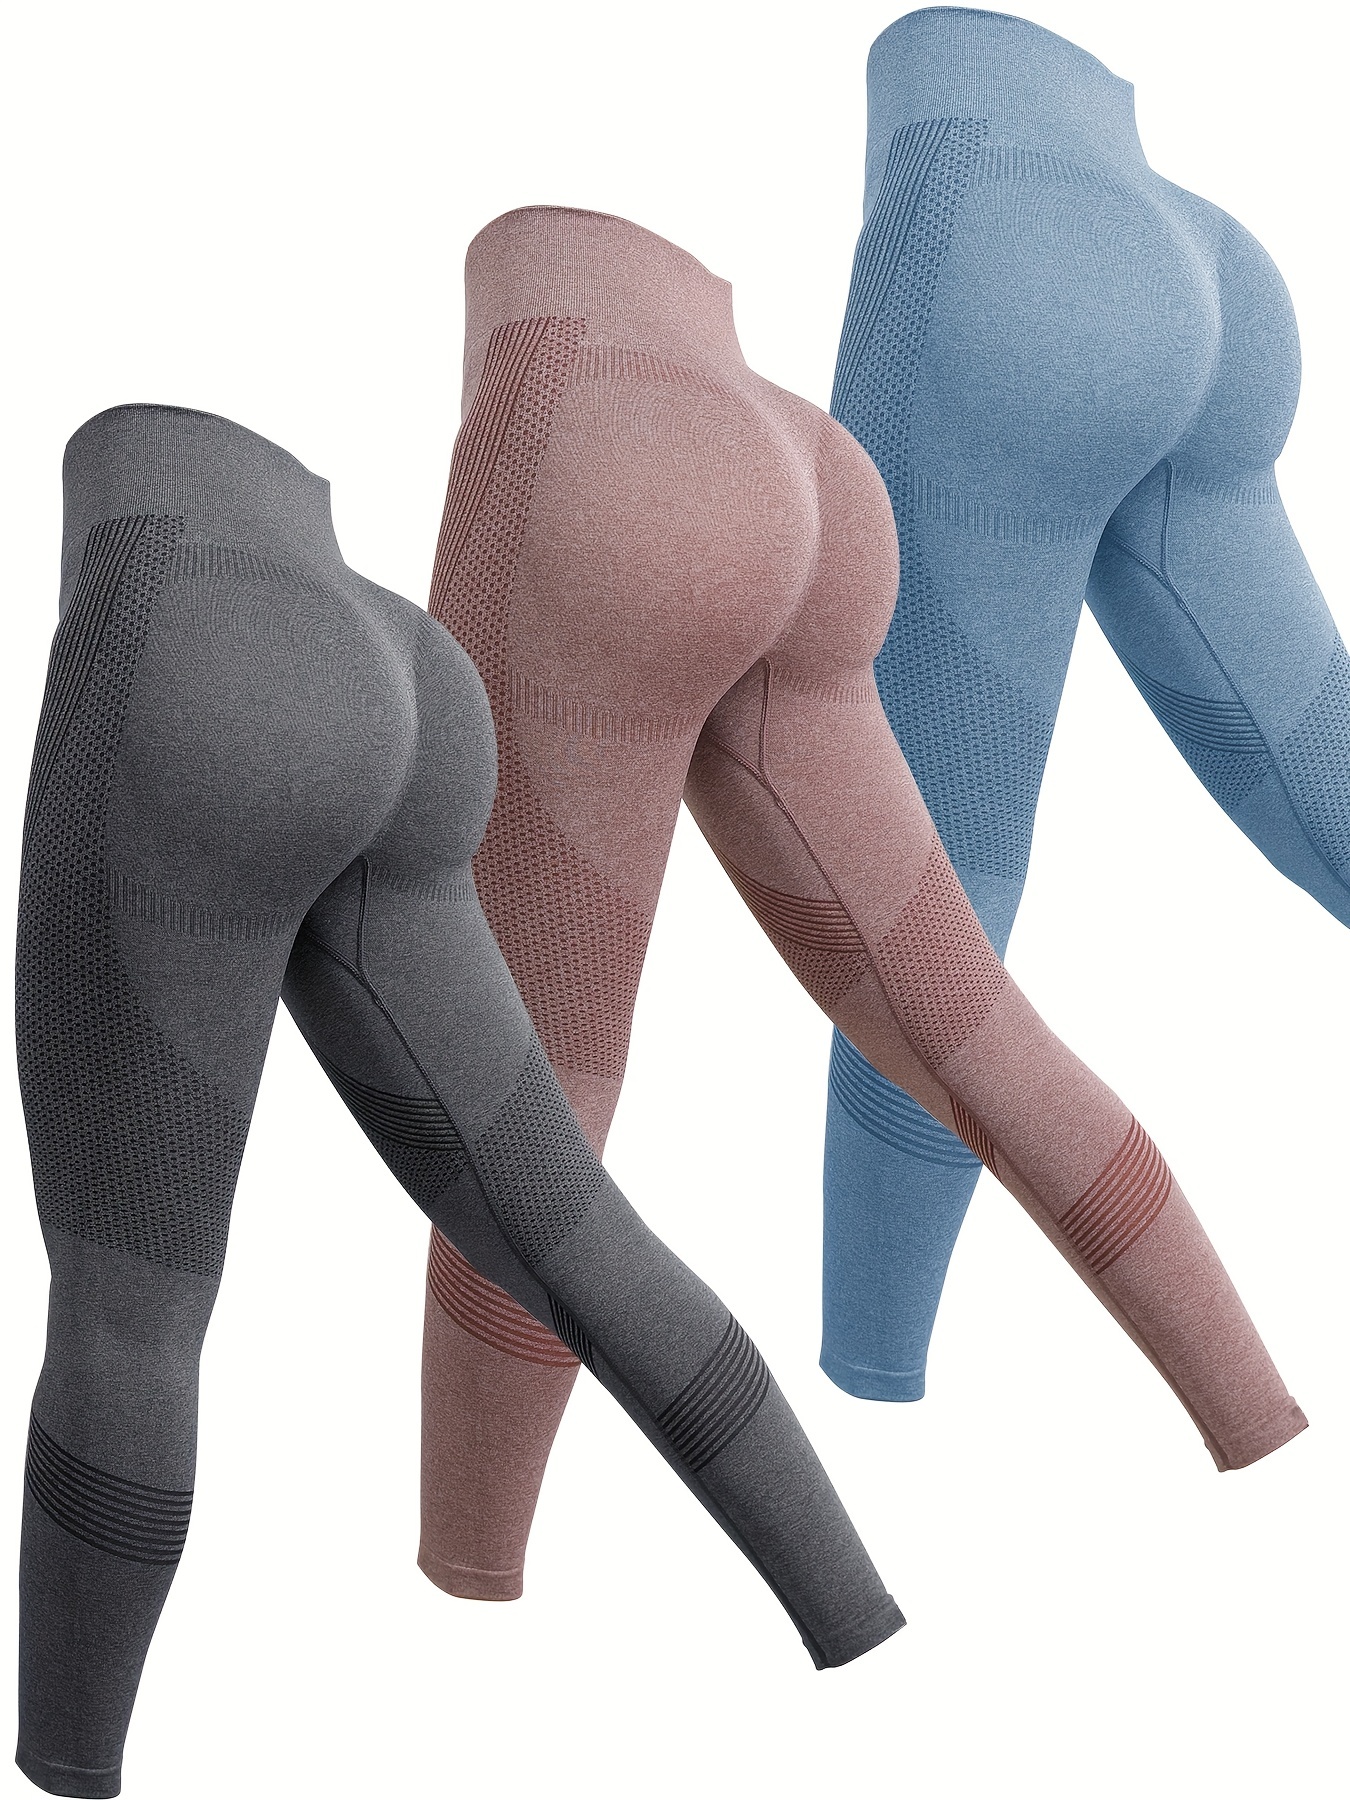 JOYSPELS Butt Lifting Workout Leggings for Women Seamless Scrunch